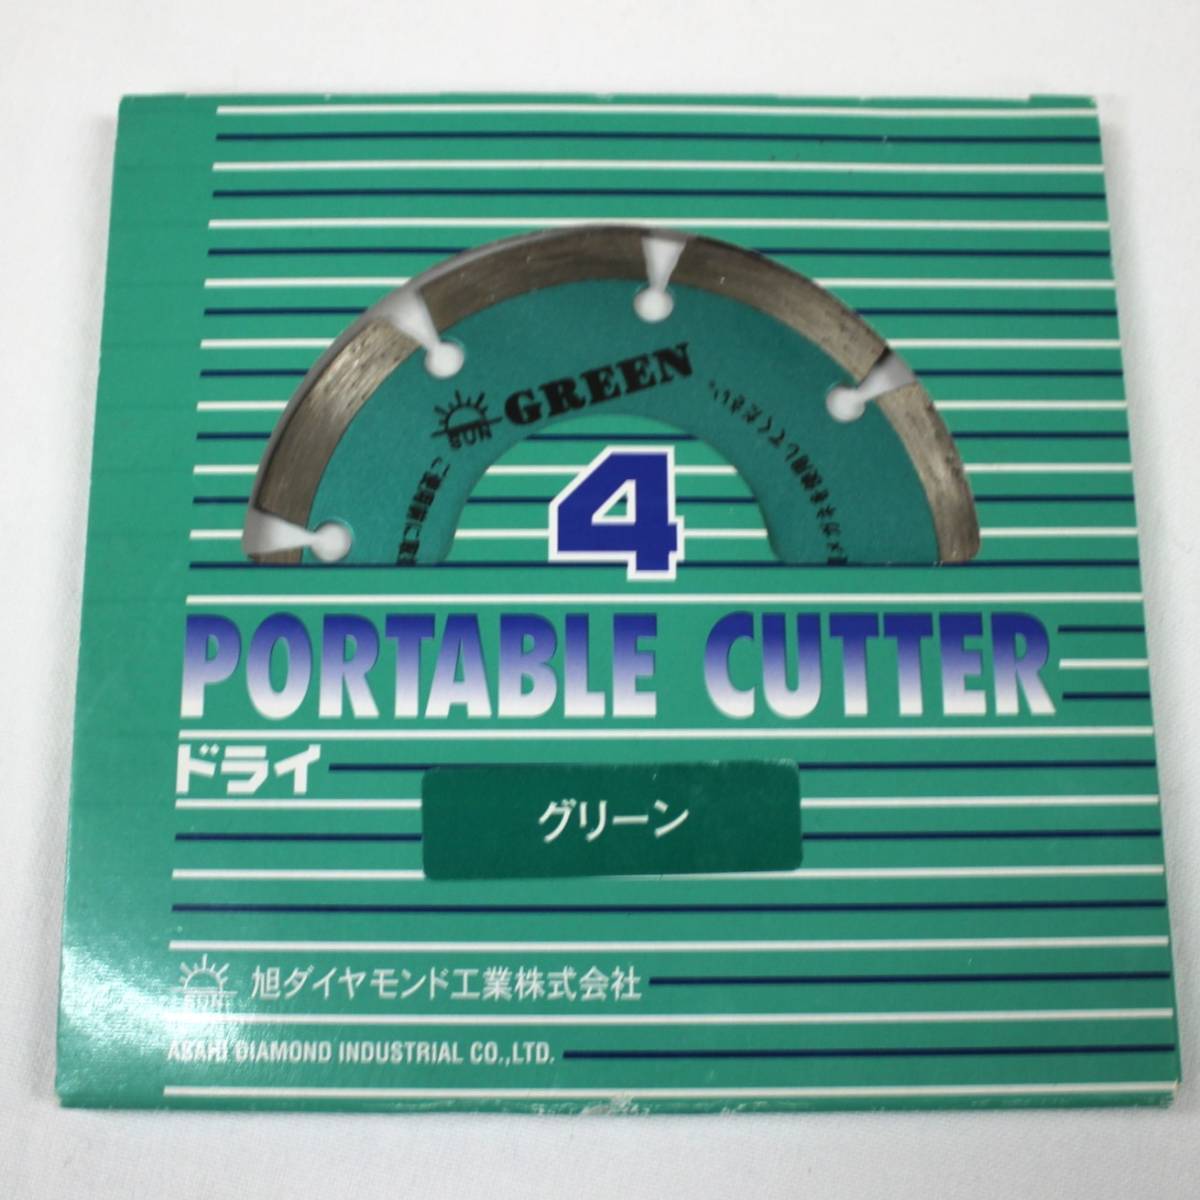 [ Sagawa отправка ] asahi бриллиант промышленность акционерное общество dry резчик 4 портативный резчик зеленый 01